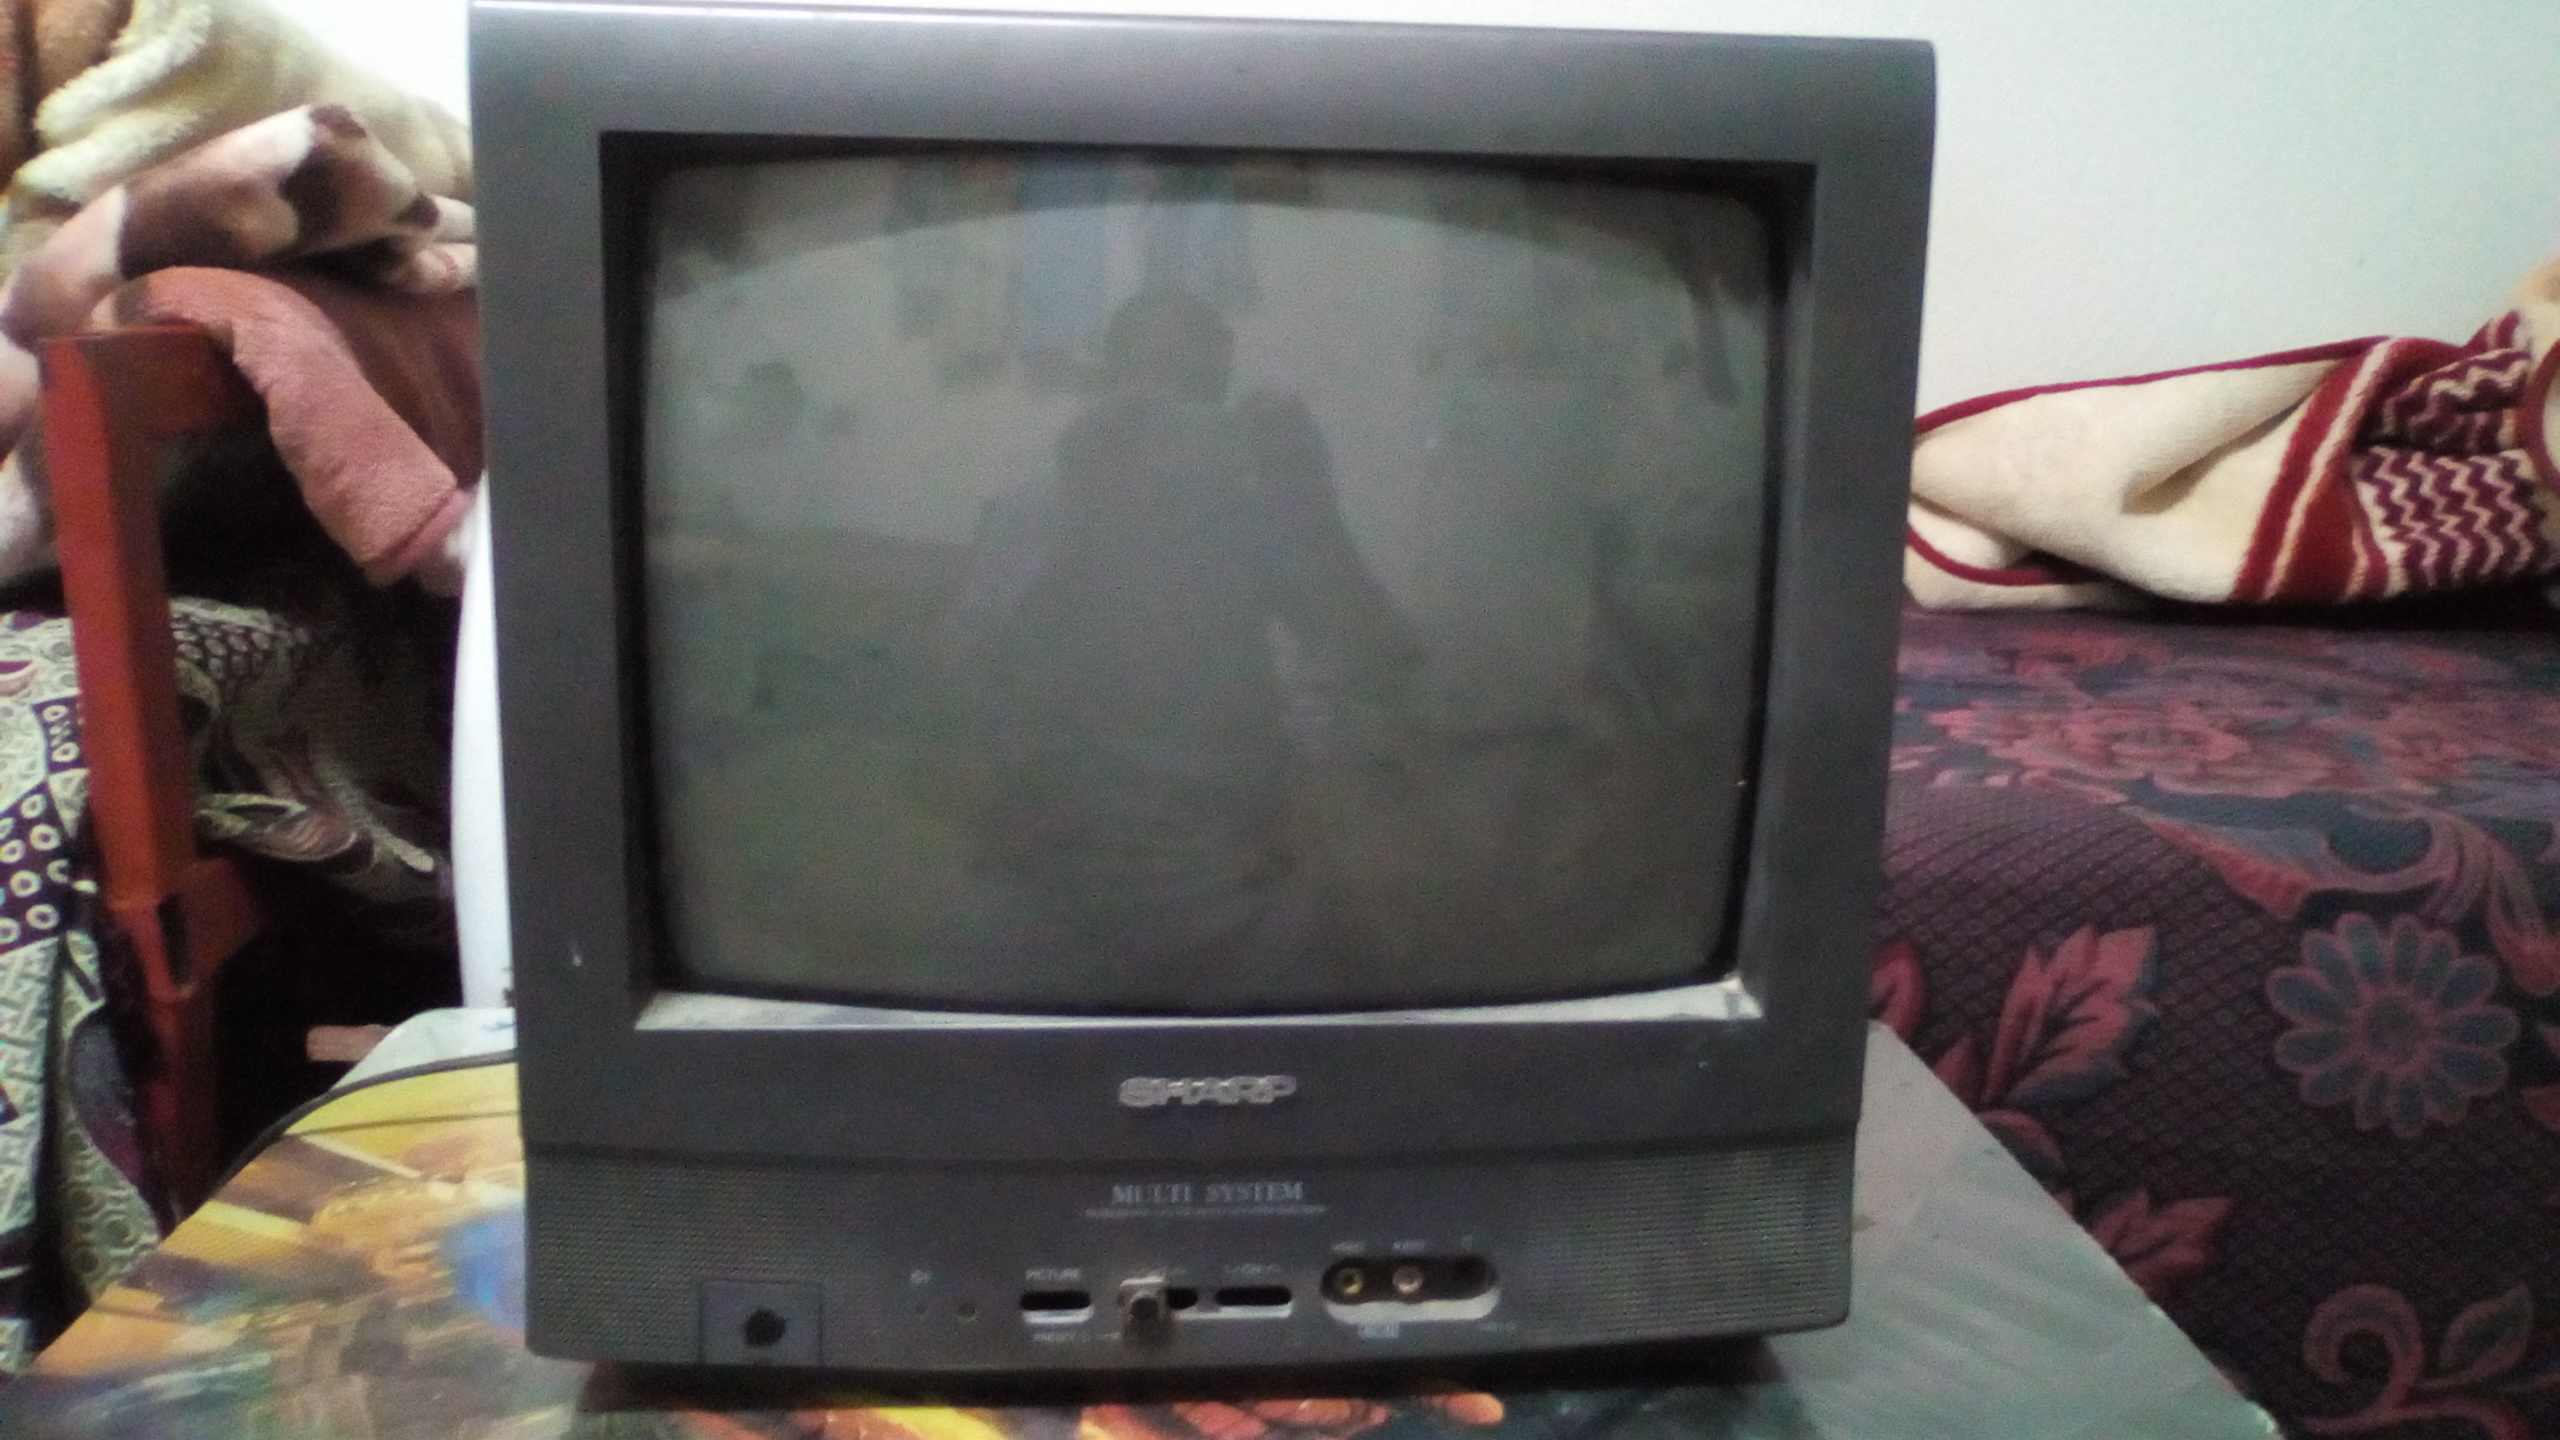 تلفزيون سامسونج 40 بوصه / Samsung 40 inch TV-  sharp tv for sale لا تنسَ...